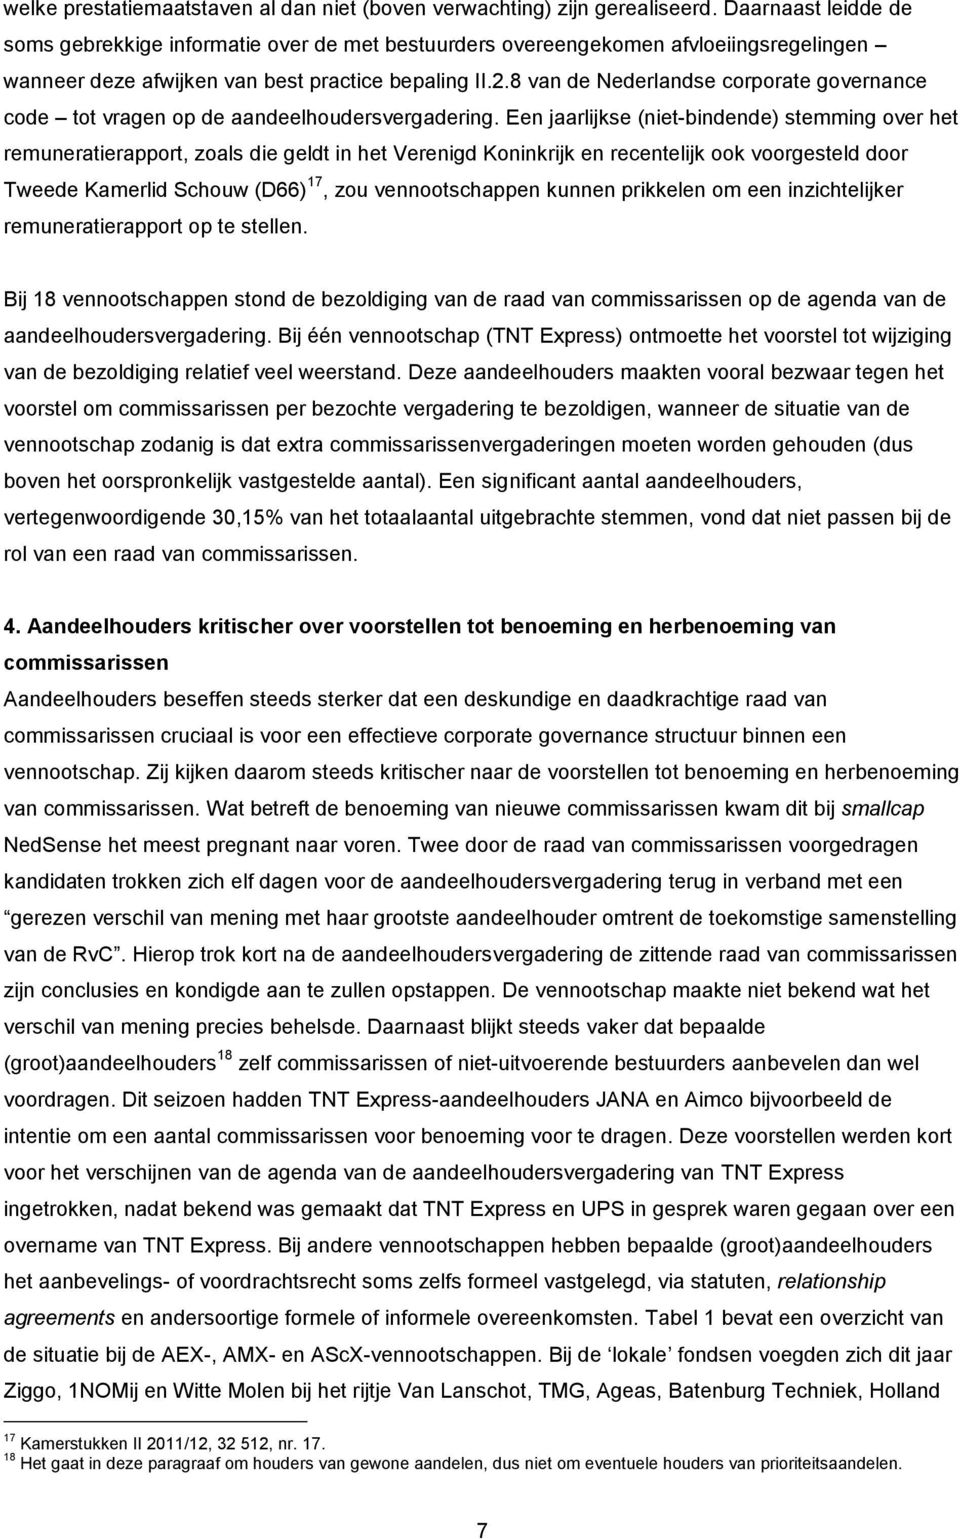 8 van de Nederlandse corporate governance code tot vragen op de aandeelhoudersvergadering.